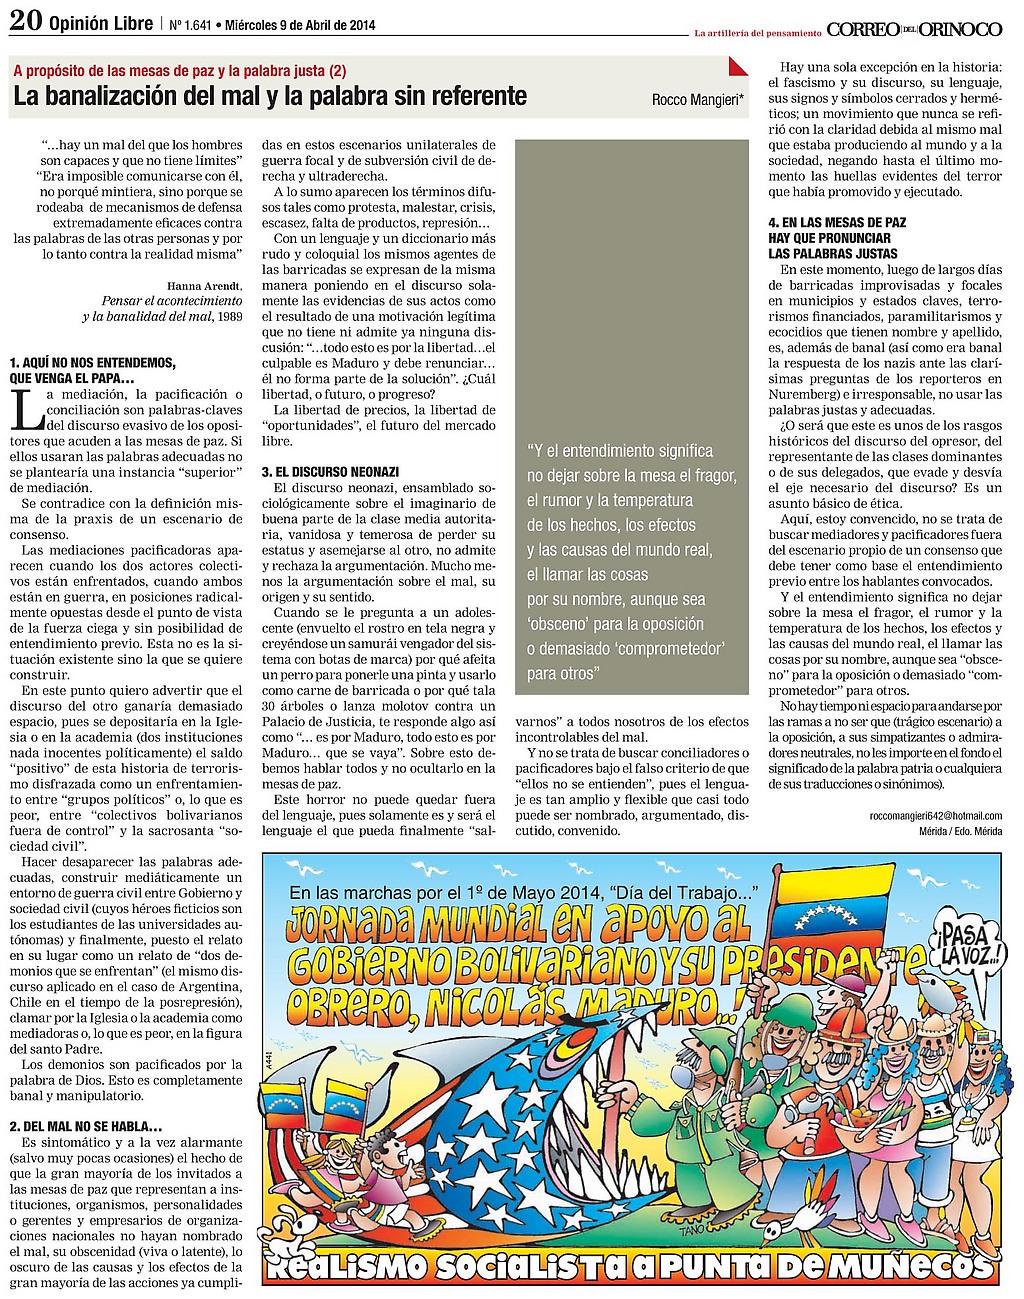 Página de opinión del Correo del Orinoco, donde se publicó originalmente este tema